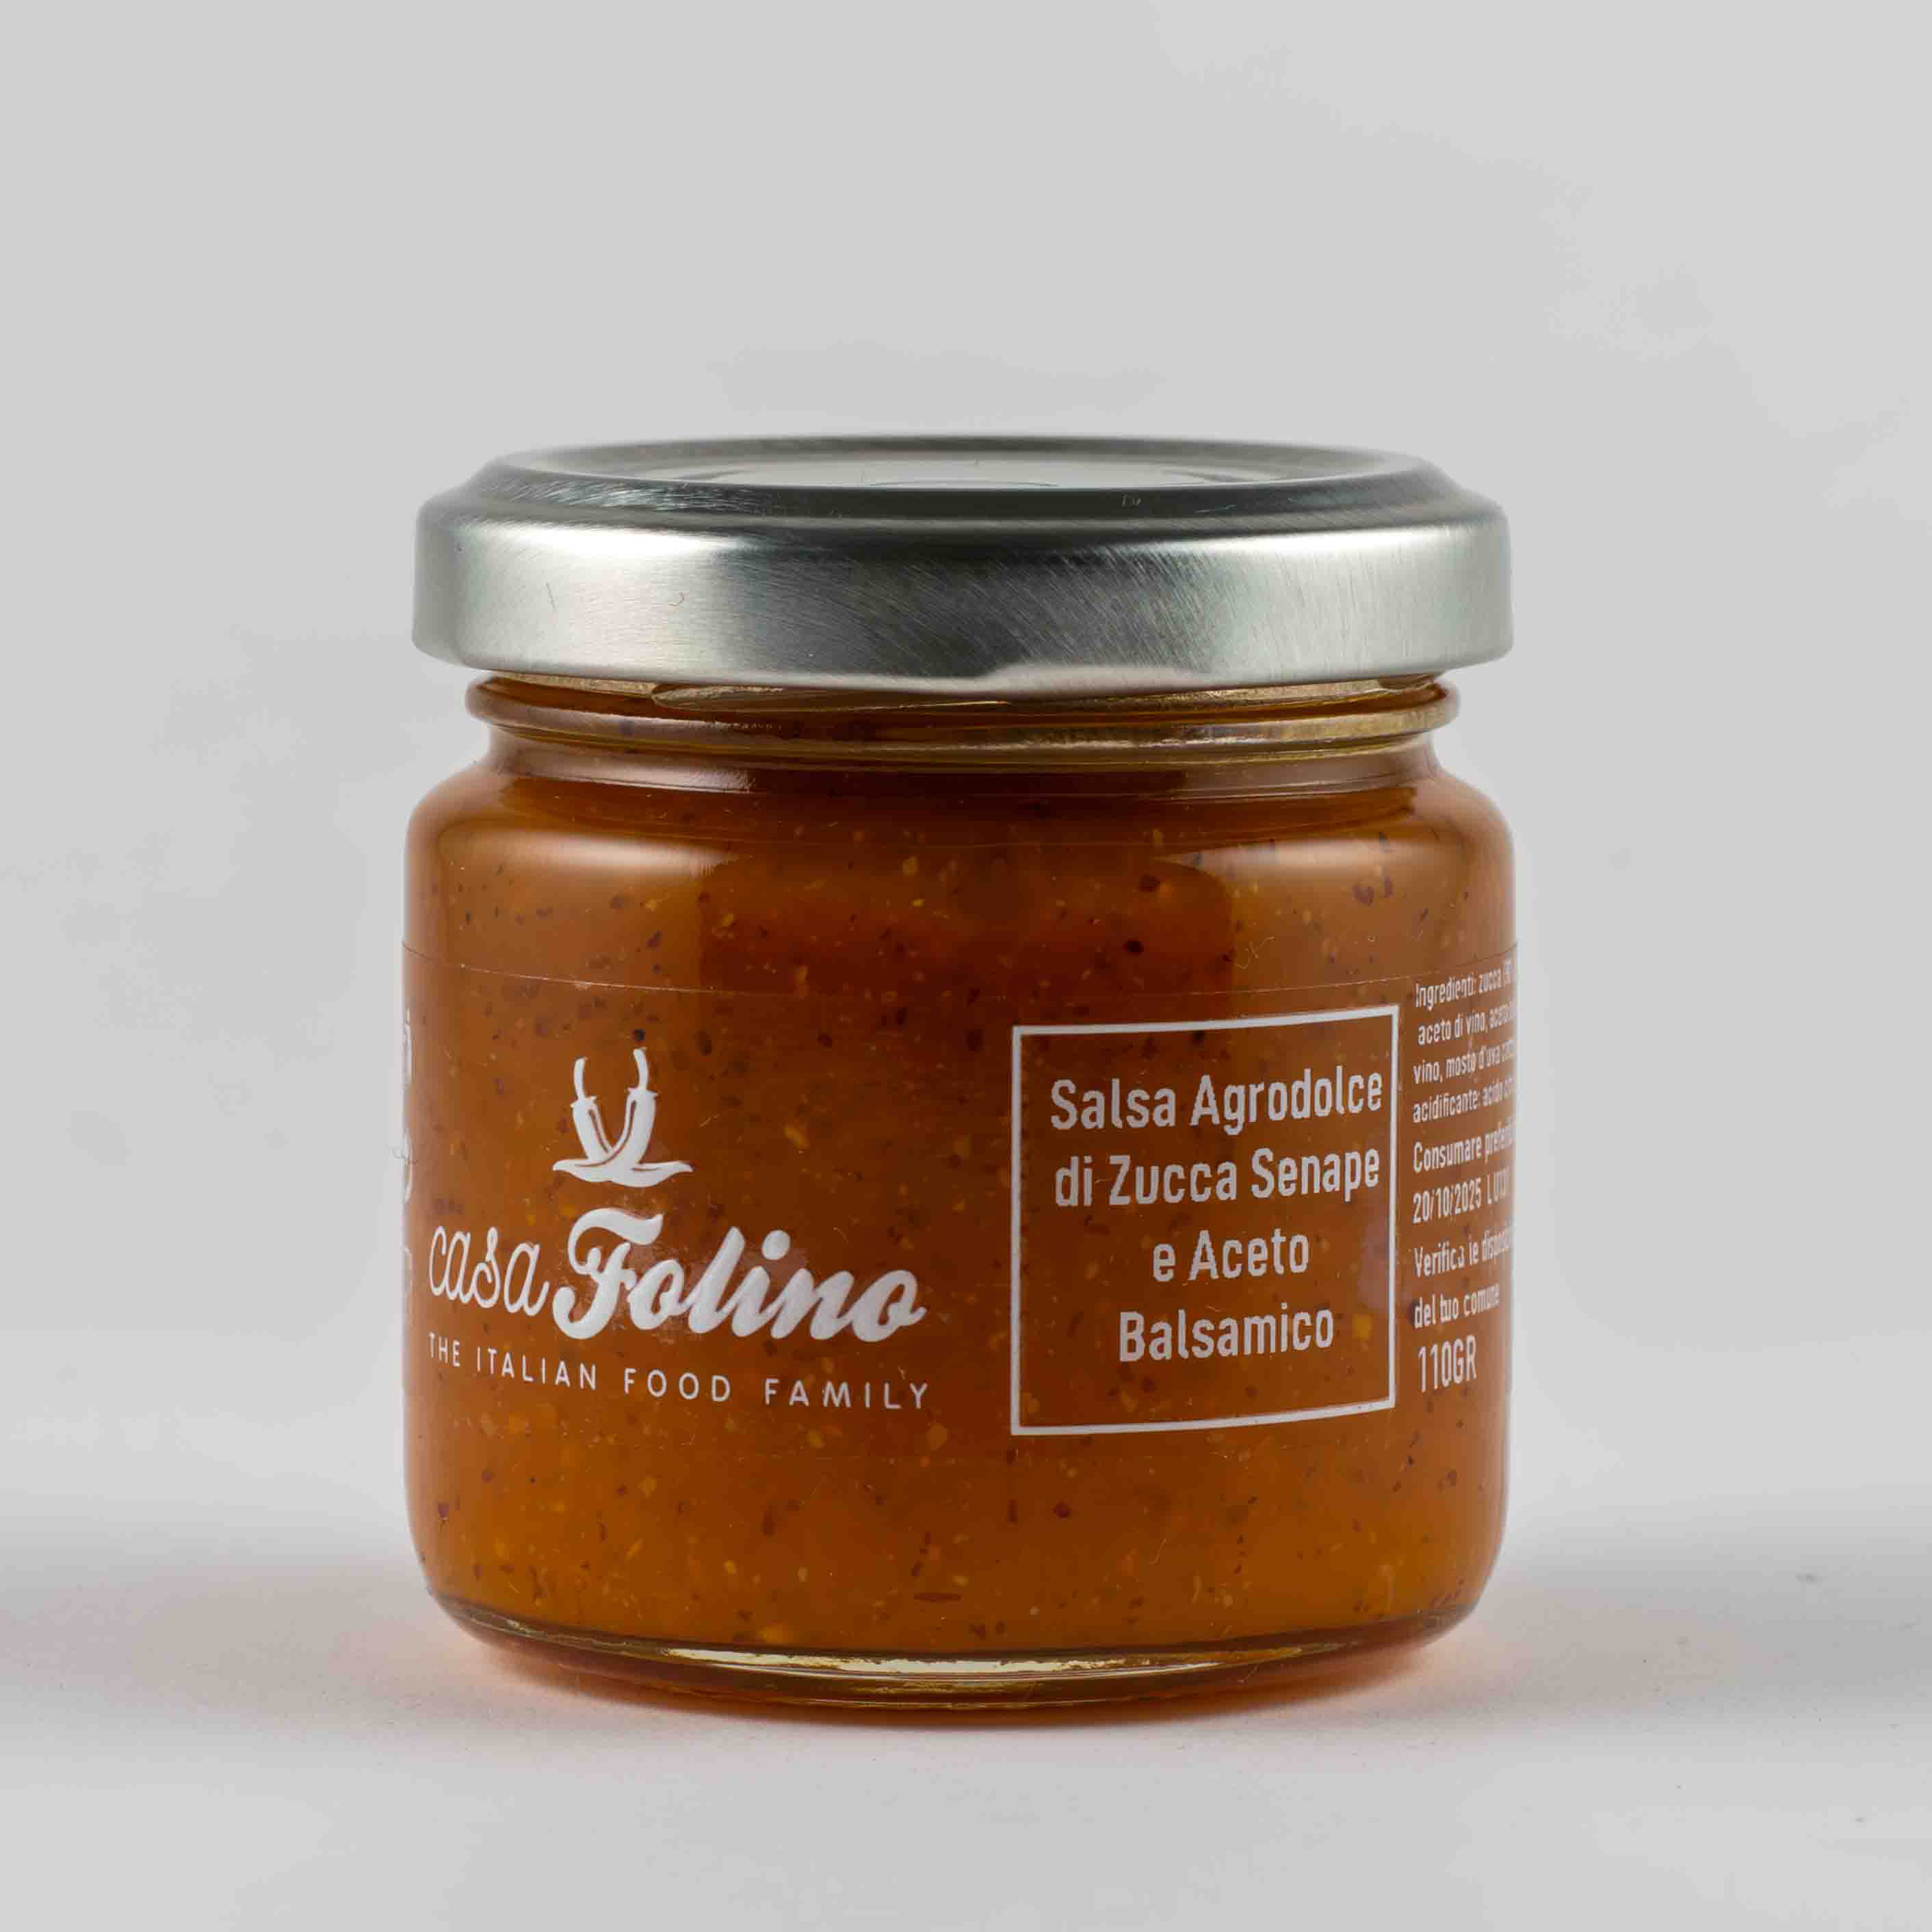 Salsa Agrodolce di Zucca Senape e Aceto balsamico 110 gr - Casafolino.com